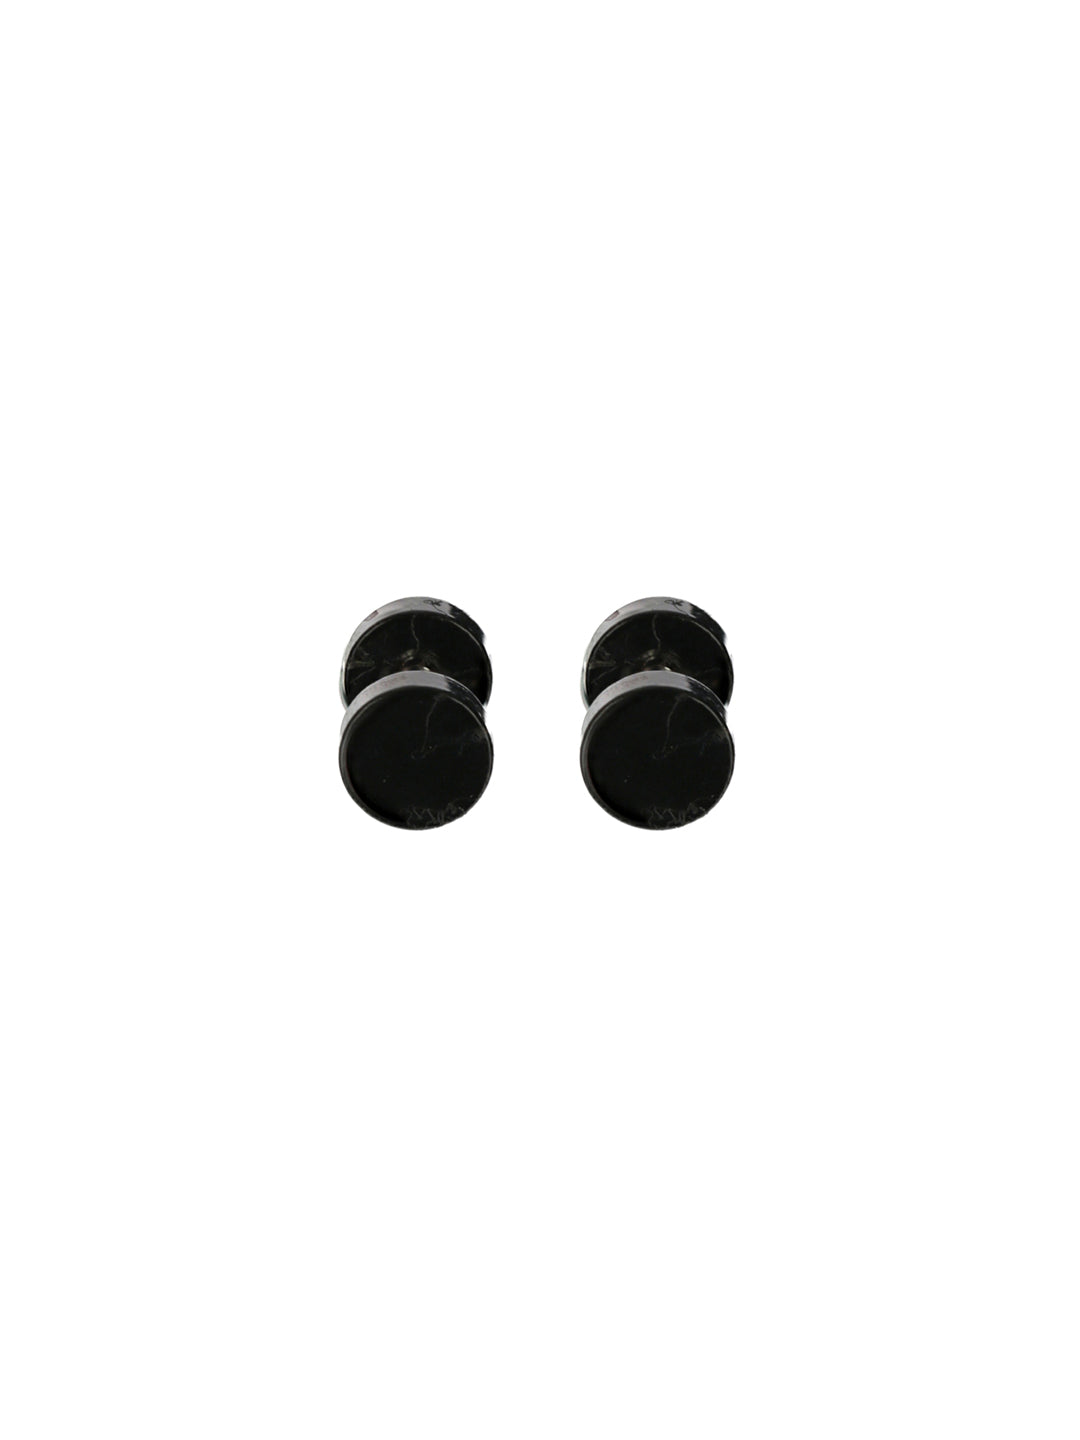 Bold by Priyaasi Black Round Stud Earrings for Men - 6 mm